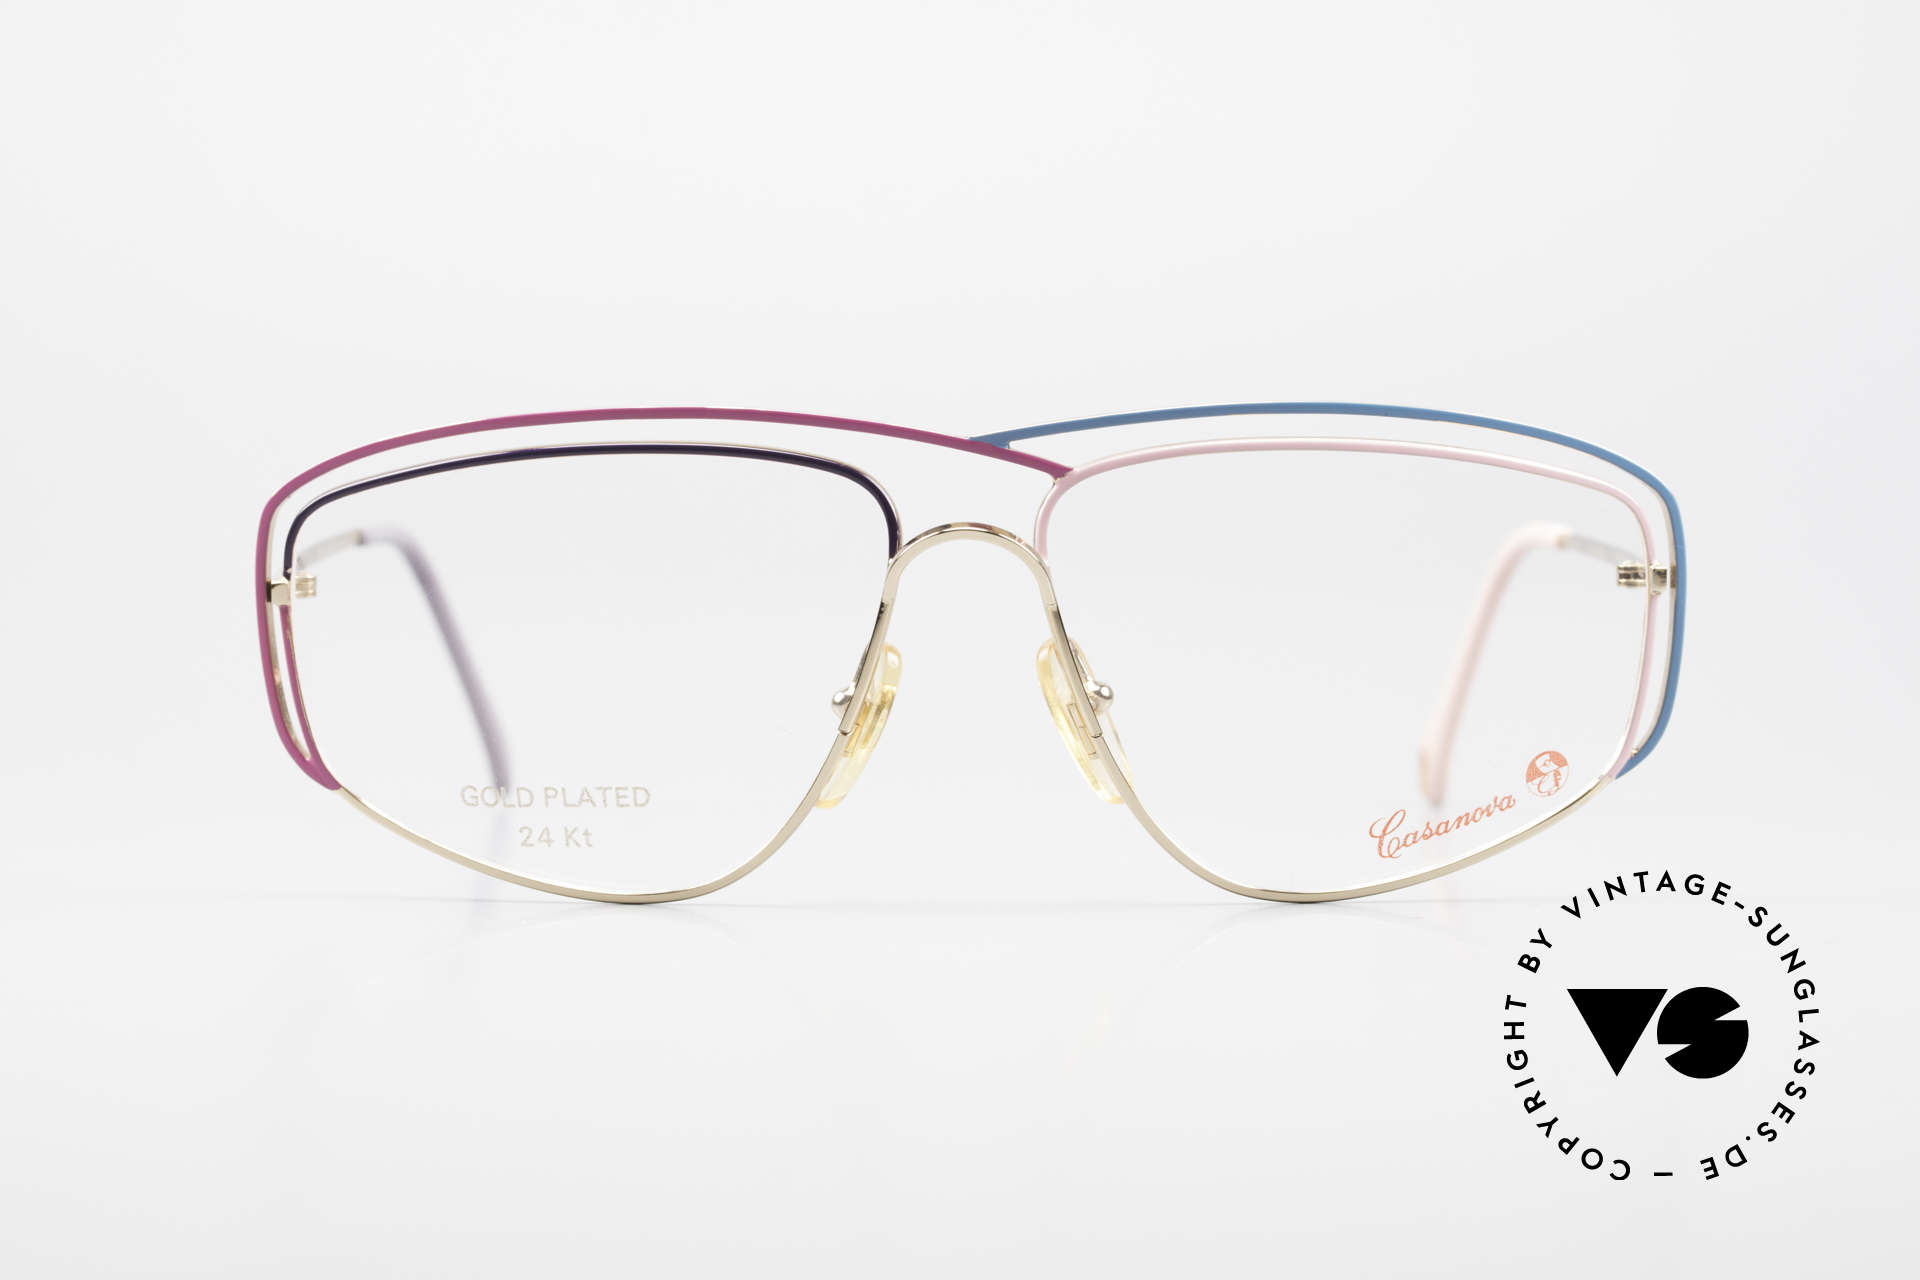 Casanova CN24 24kt Vergoldete Damen Brille, tolles Zusammenspiel v. Farbe, Form & Funktionalität, Passend für Damen